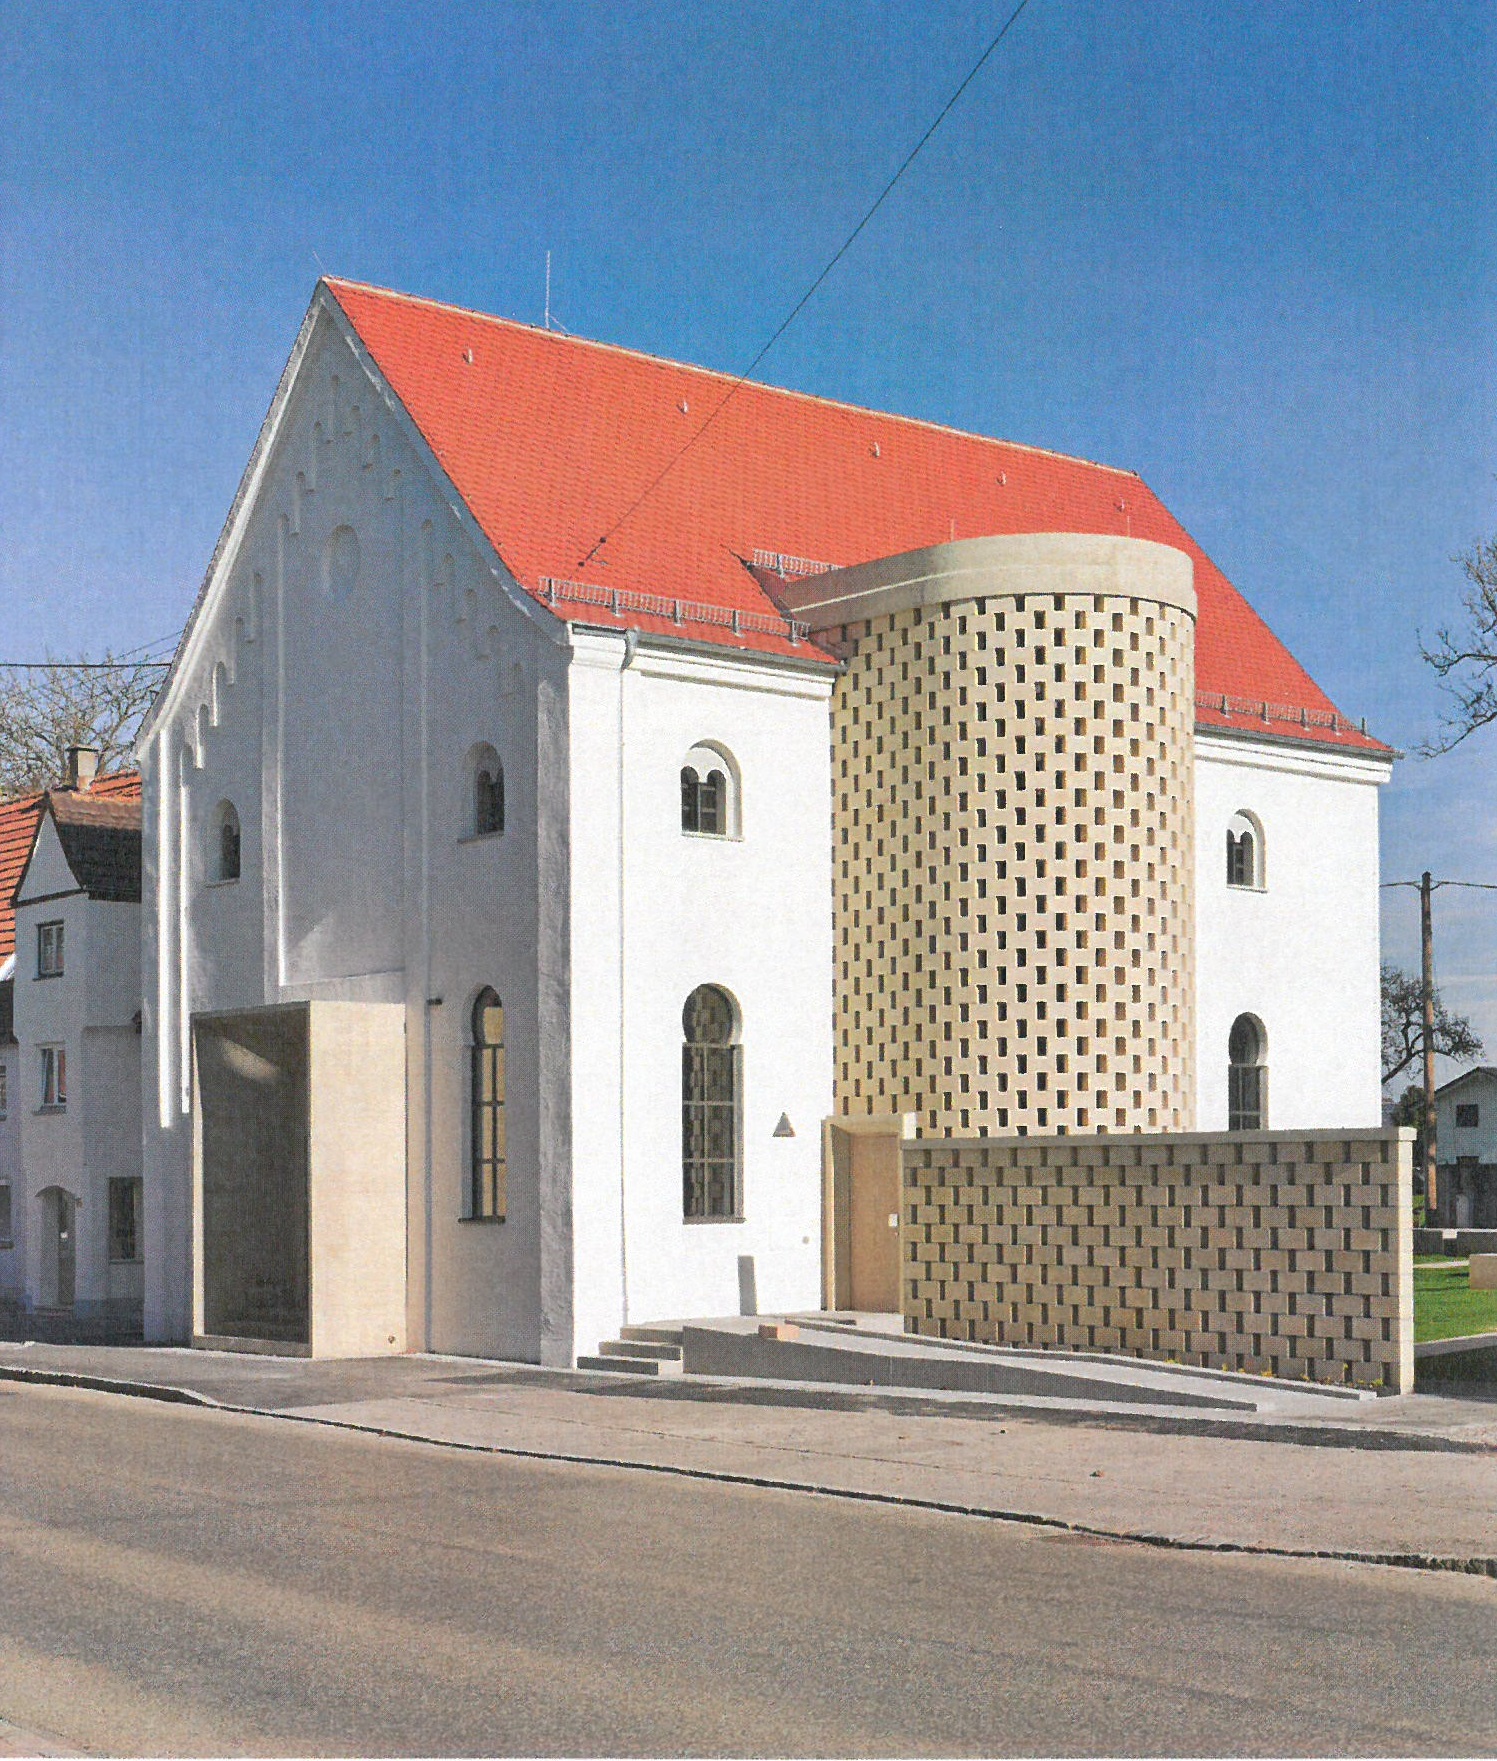 Ehemalige Synagoge Fellheim, Lkr Unterallgäu, nach der Sanierung